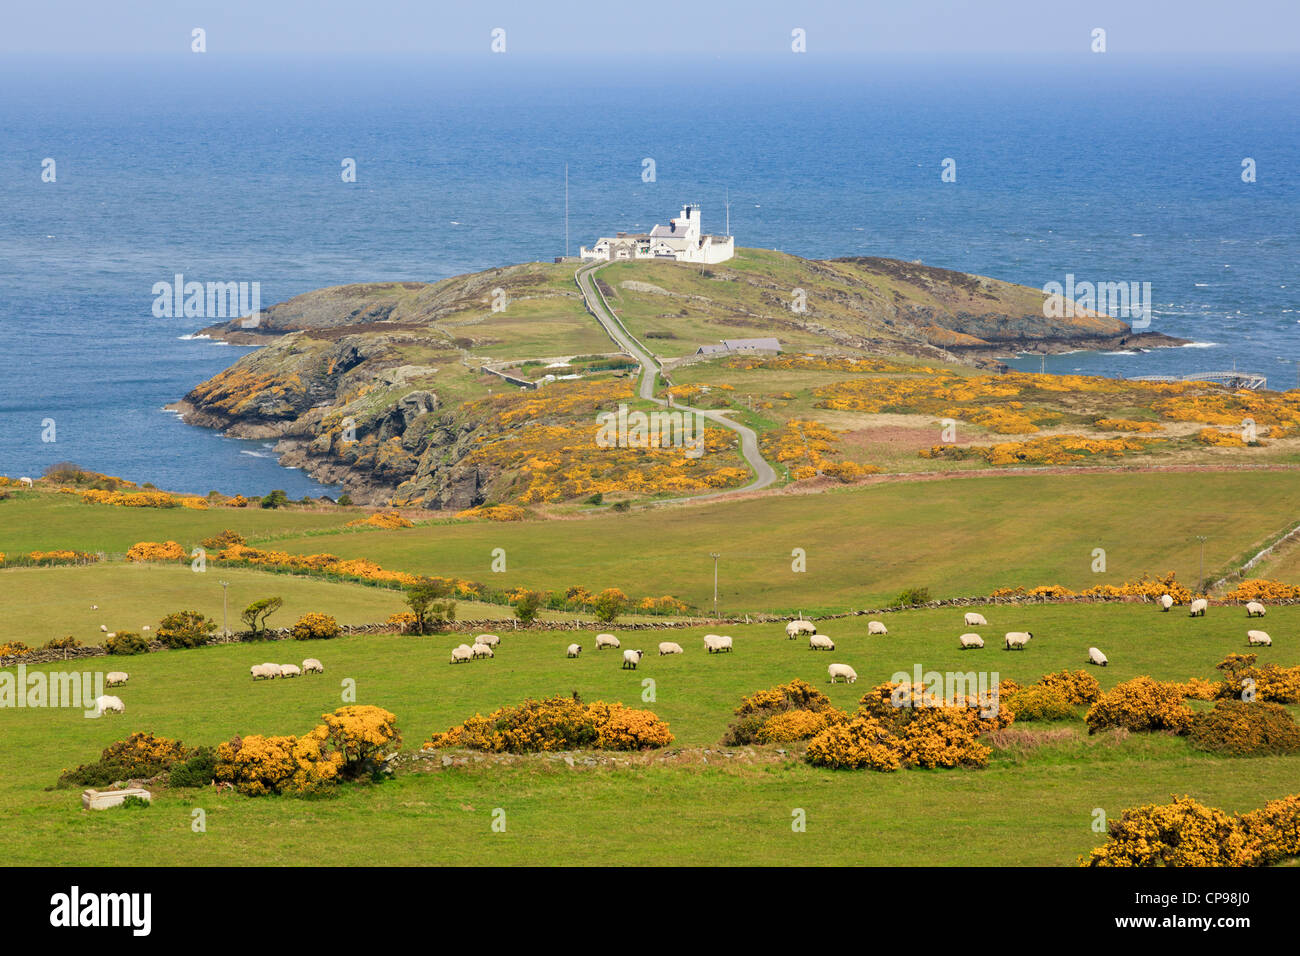 Ver al punto Lynas faro en la costa de Gales con las ovejas que pastan en los campos de colina en Llaneilian Isla de Anglesey al norte de Gales, Reino Unido de Gran Bretaña. Foto de stock